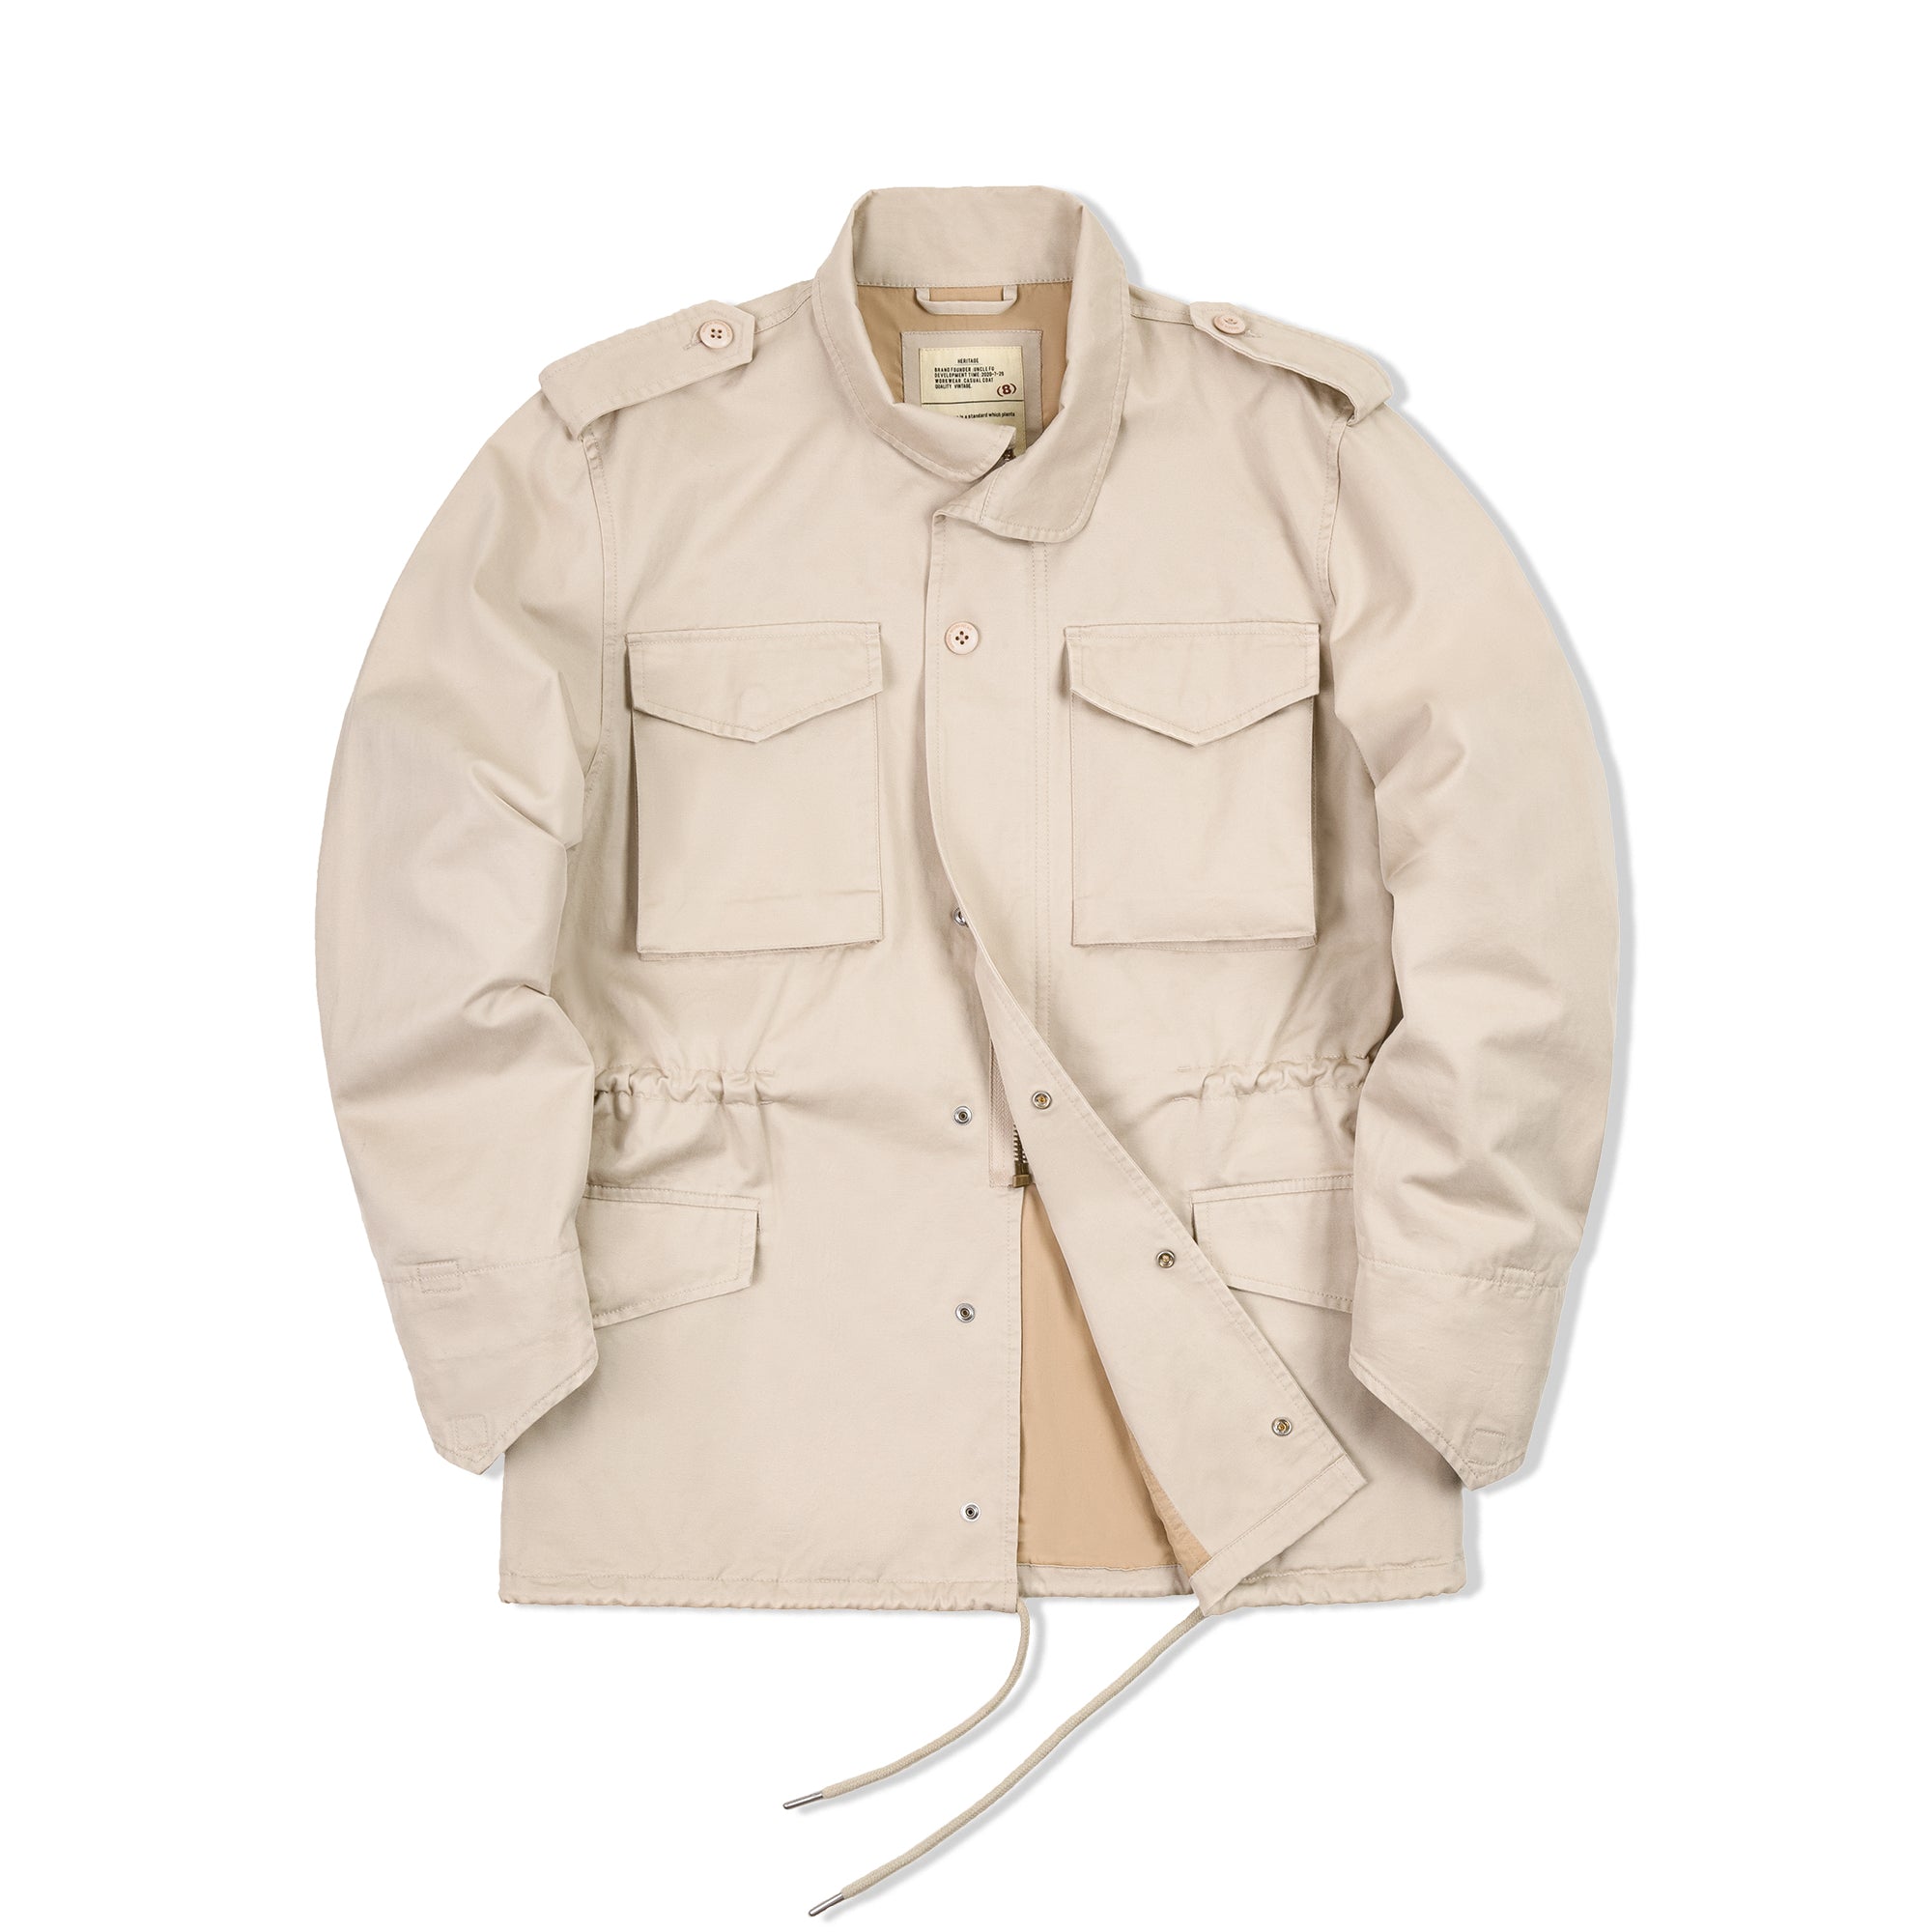 Retro Field Jacket Khaki Windbreaker for Men